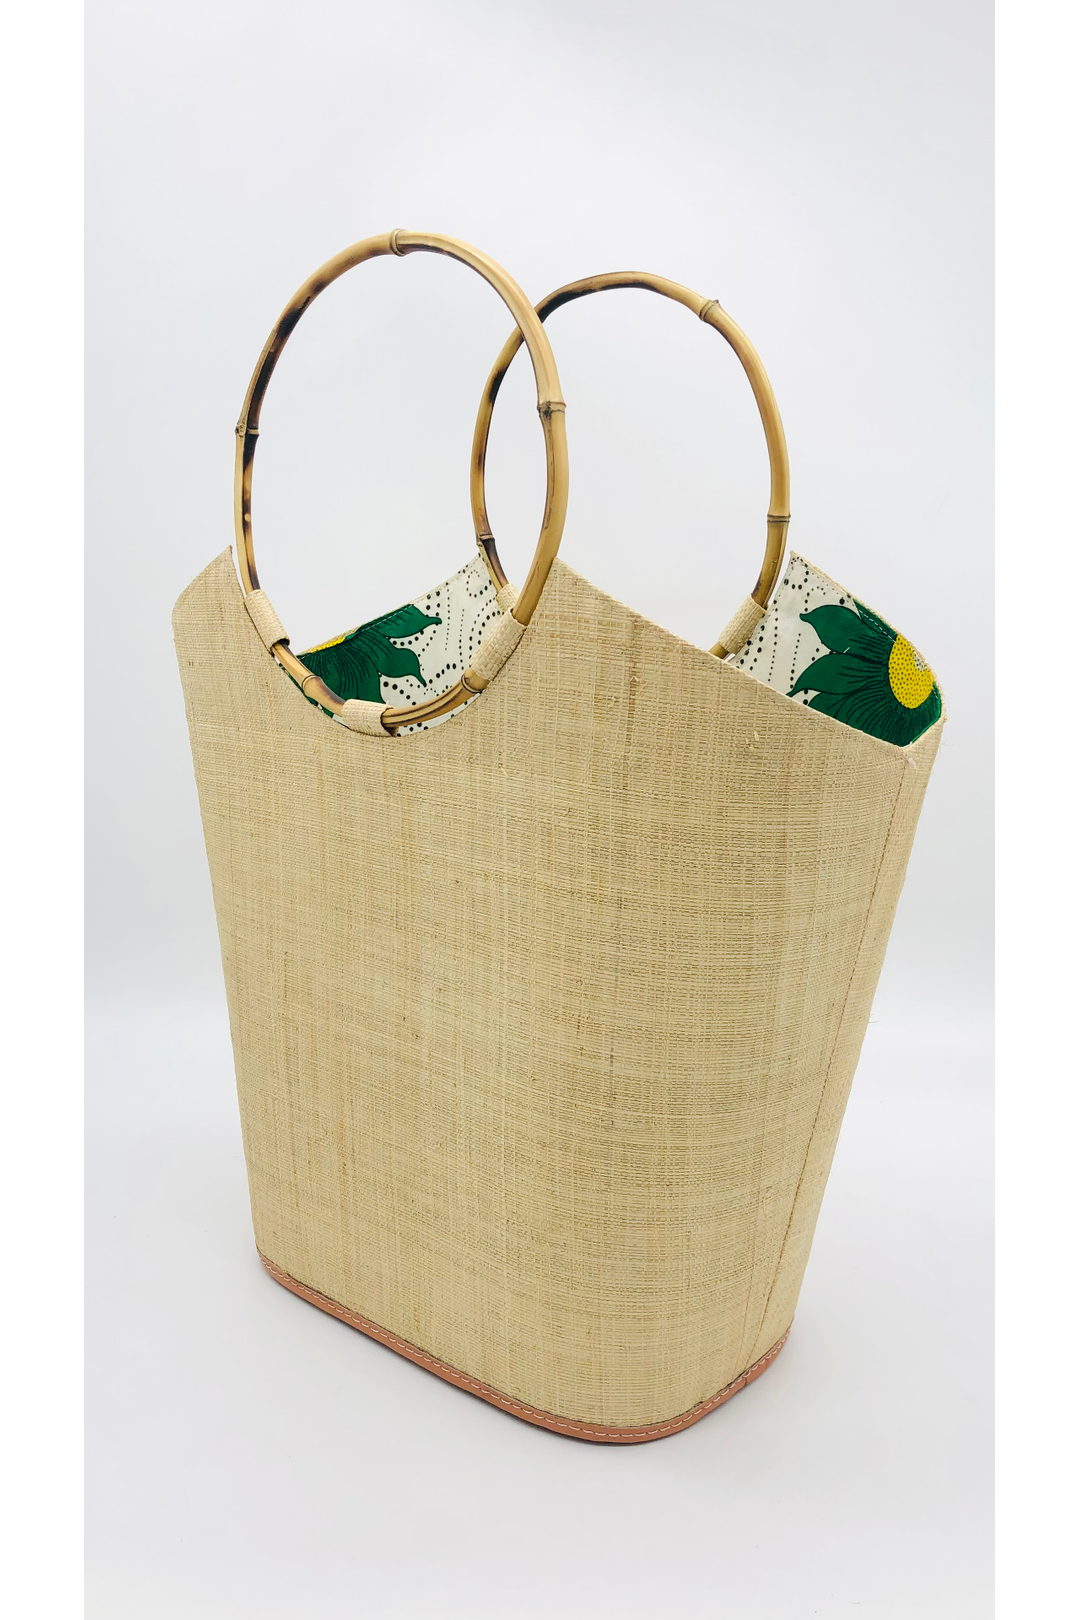 Straw Bag with Bamboo Handles: Natural